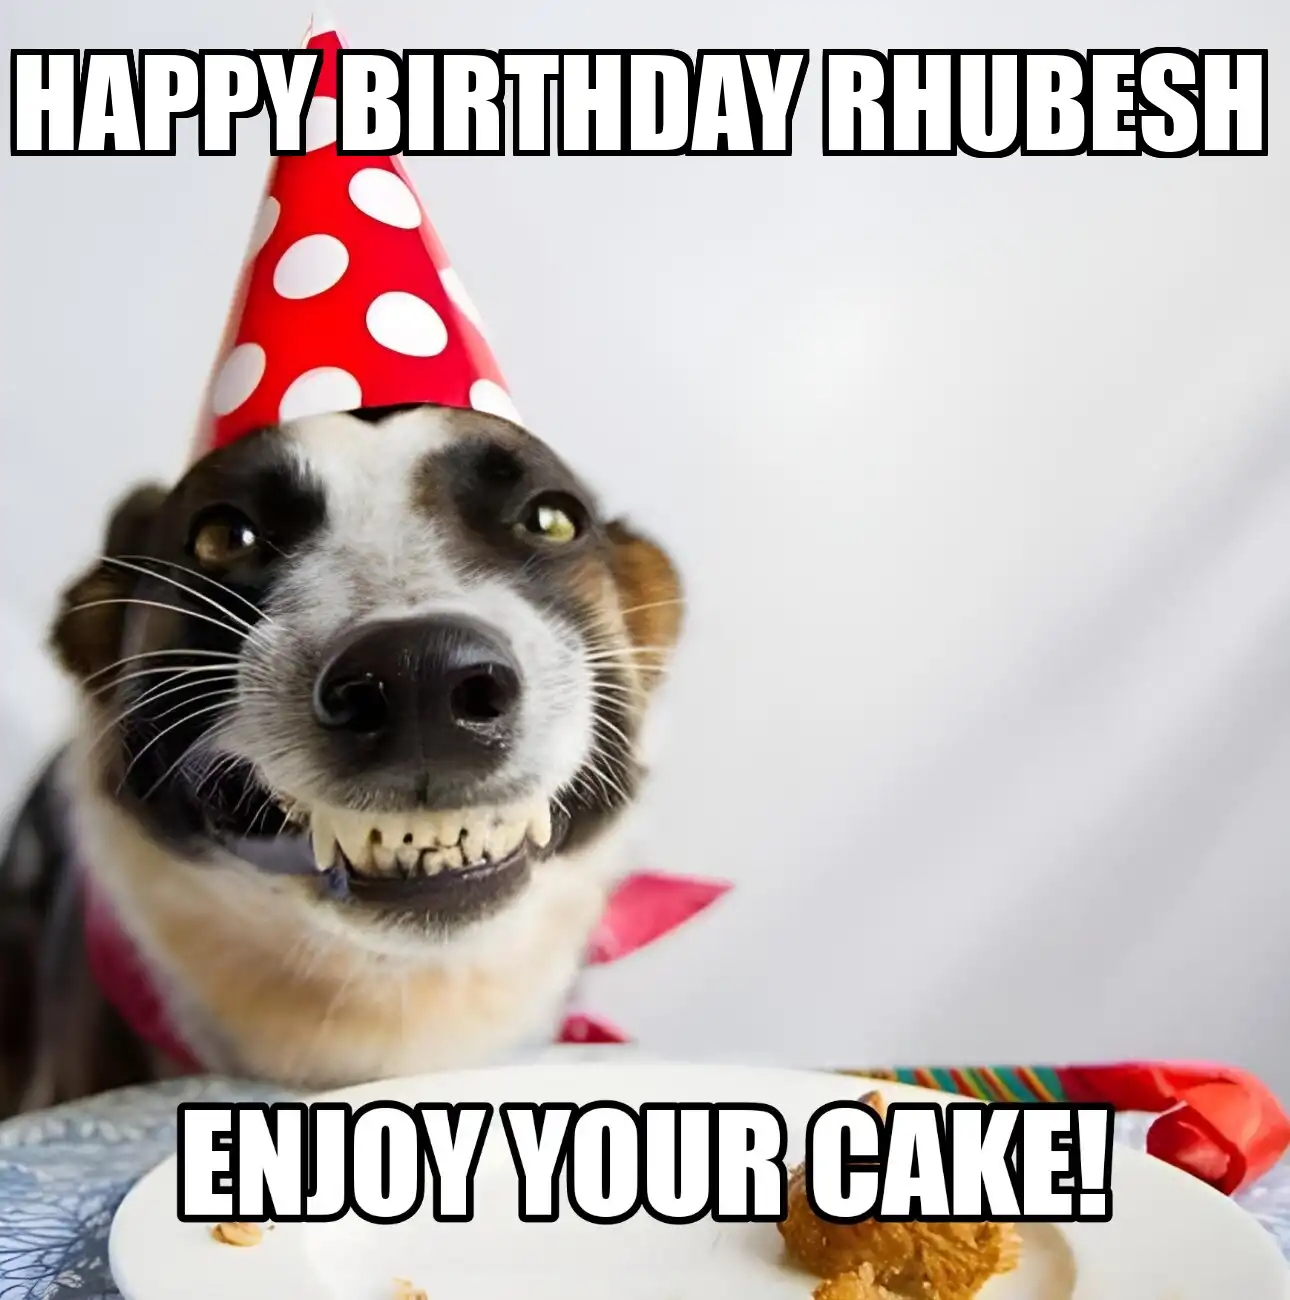 Happy Birthday Rhubesh Enjoy Your Cake Dog Meme